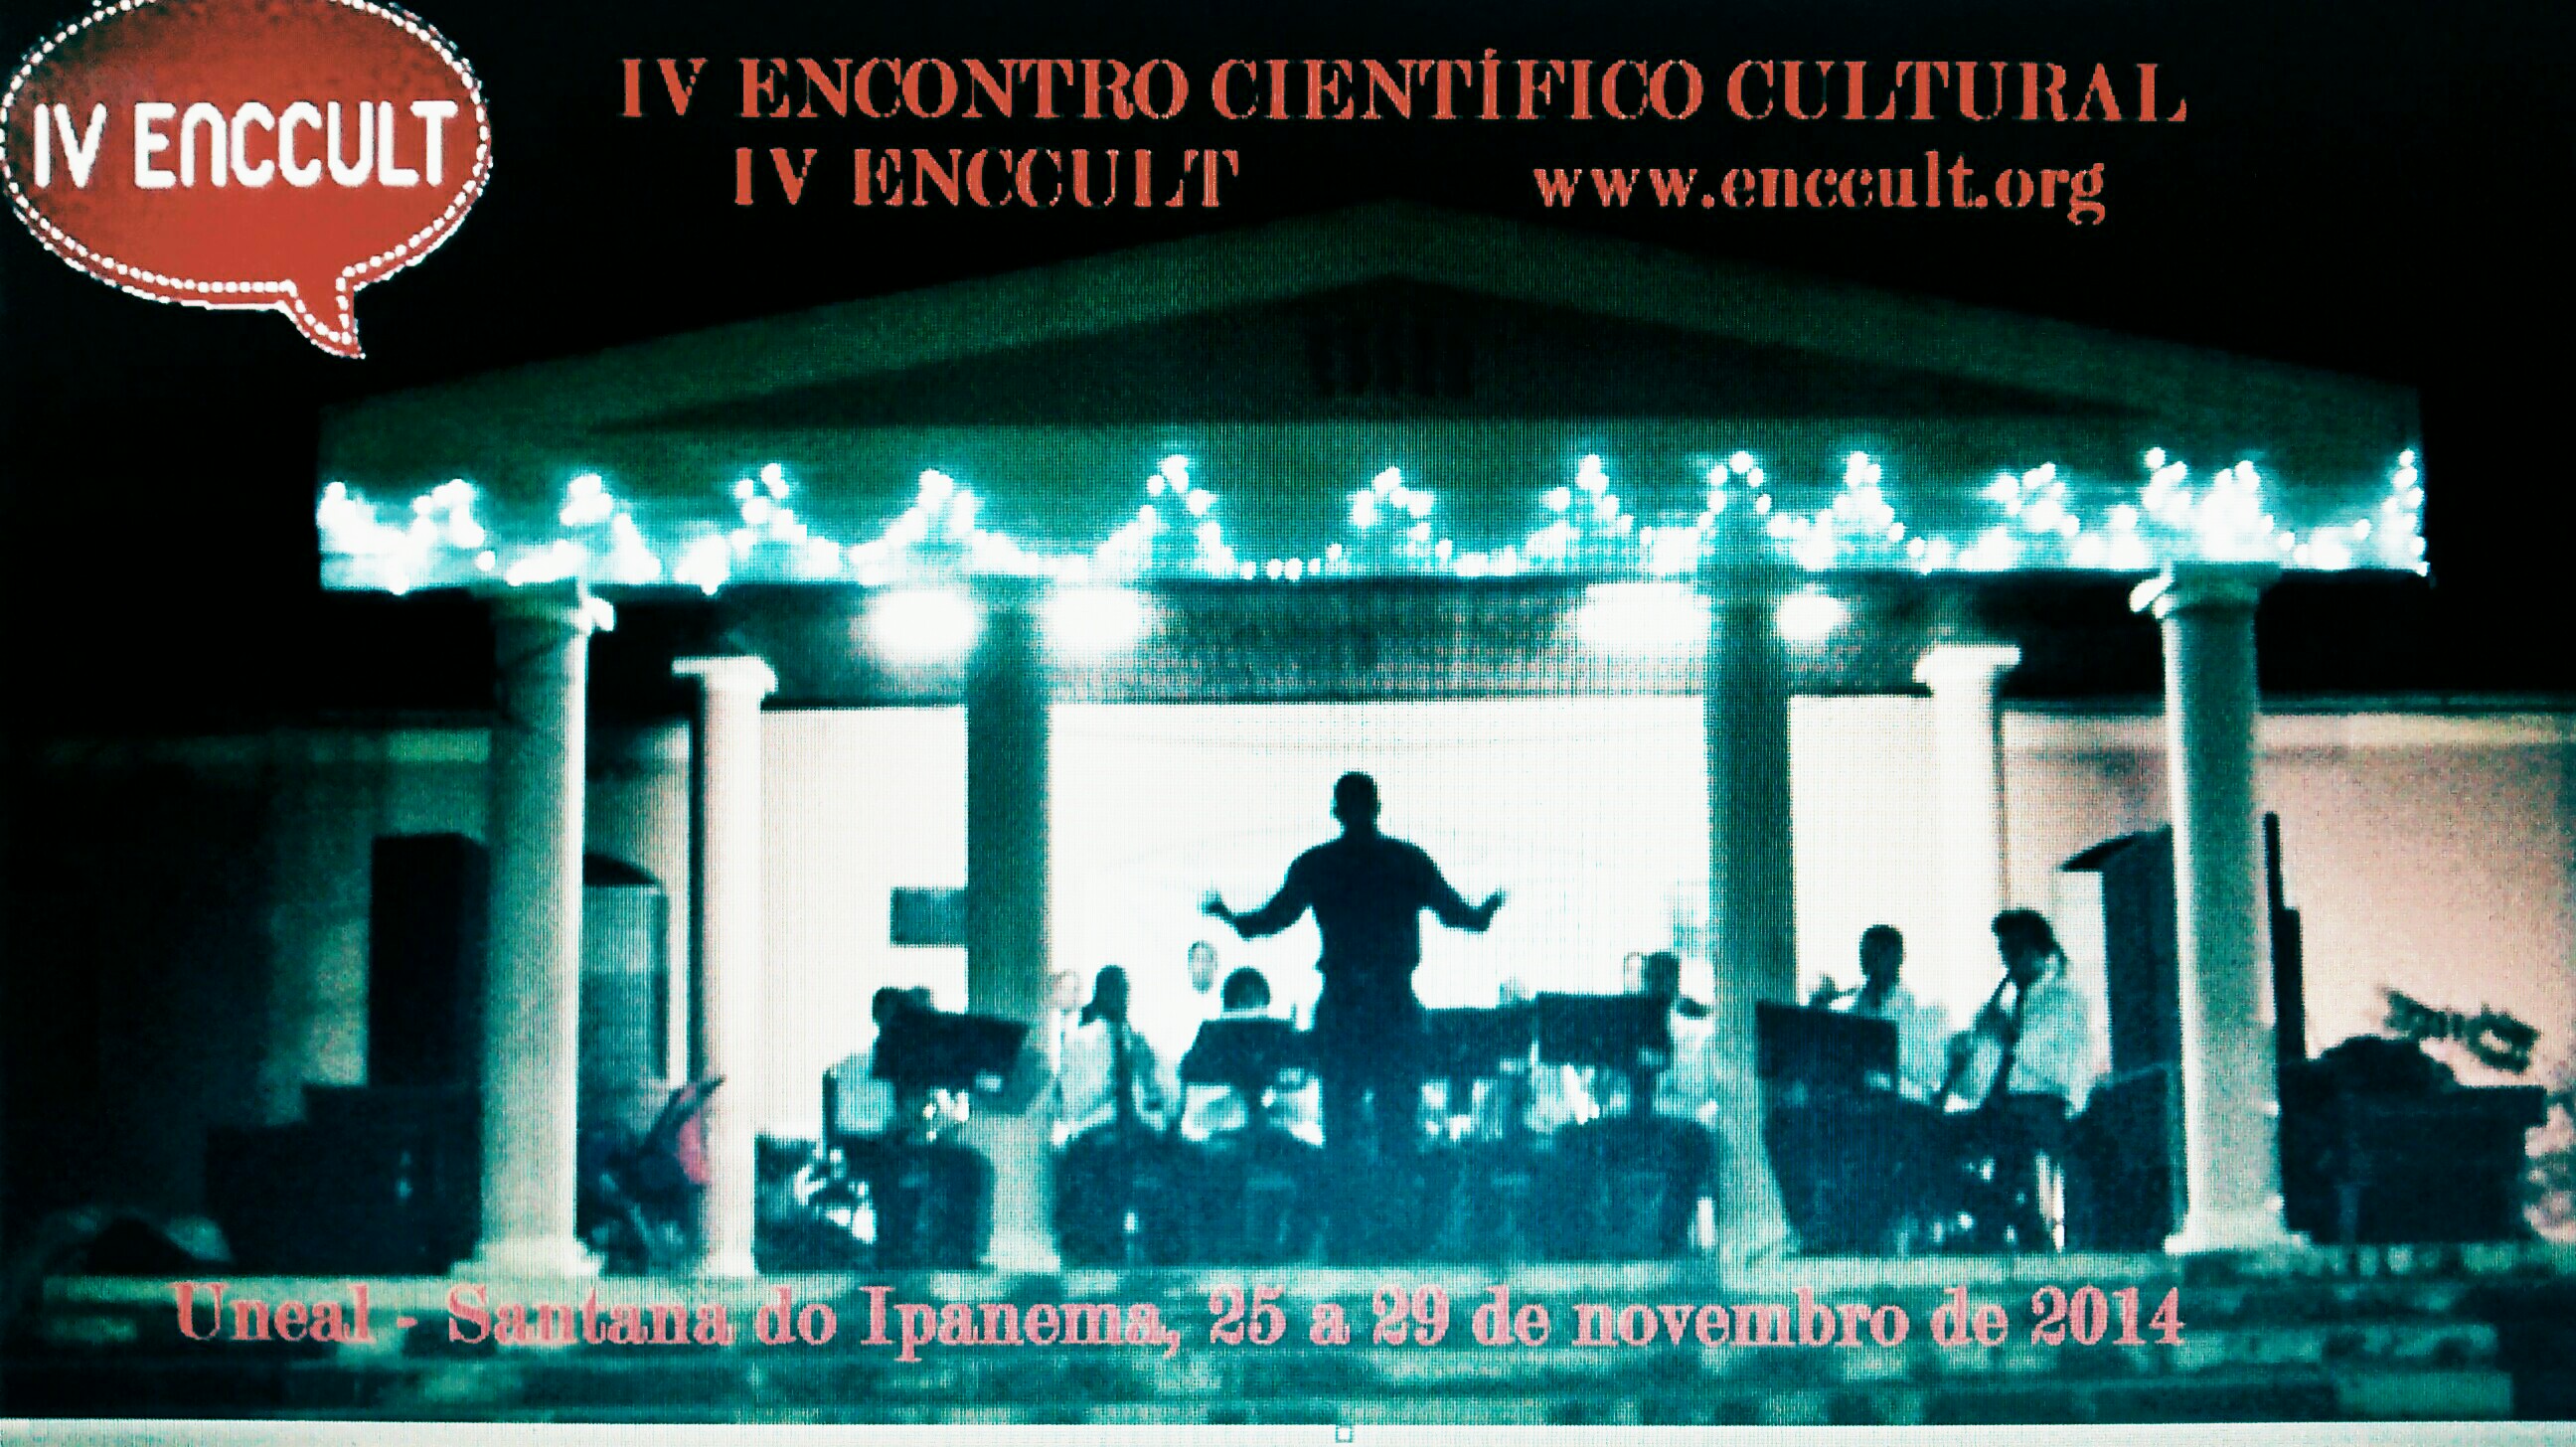 IV ENCCULT - IV ENCONTRO CIENTÍFICO CULTURAL DE ALAGOAS